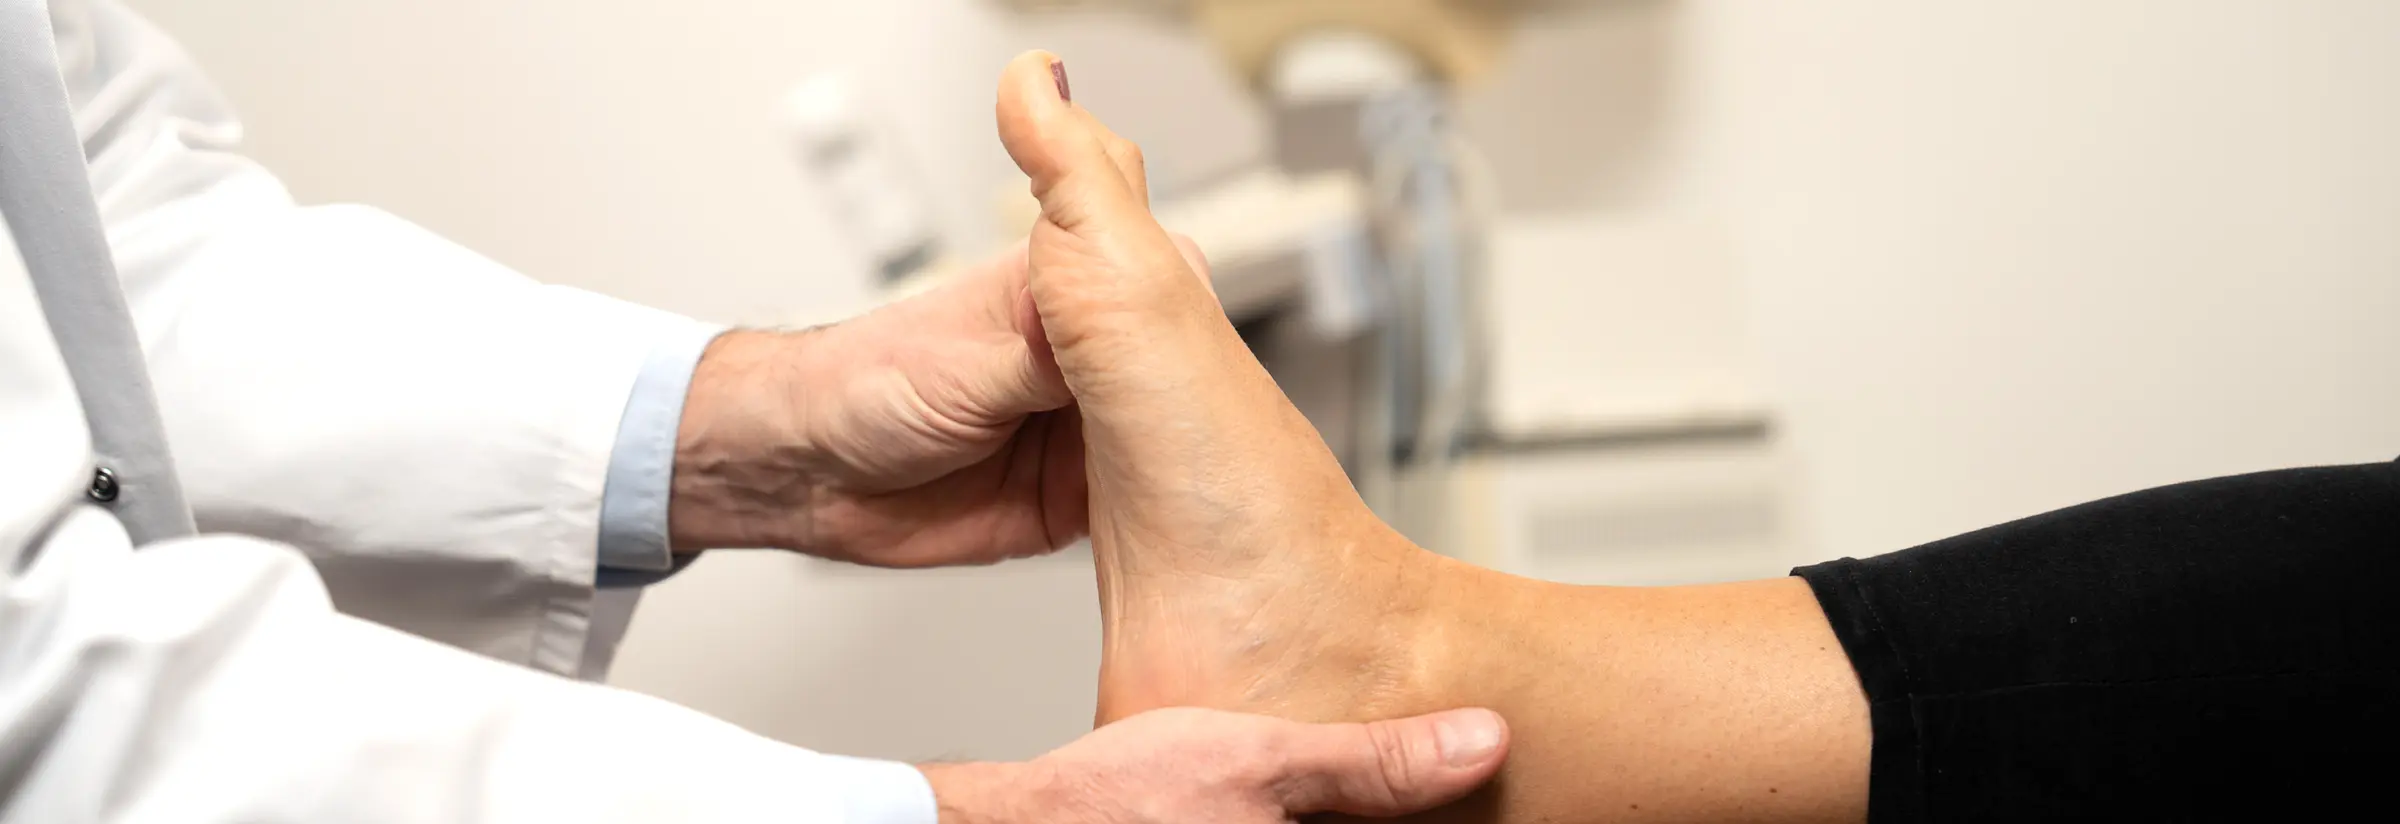 Schmerzende Füße - orthopädische Ursachen und Behandlungsmethoden